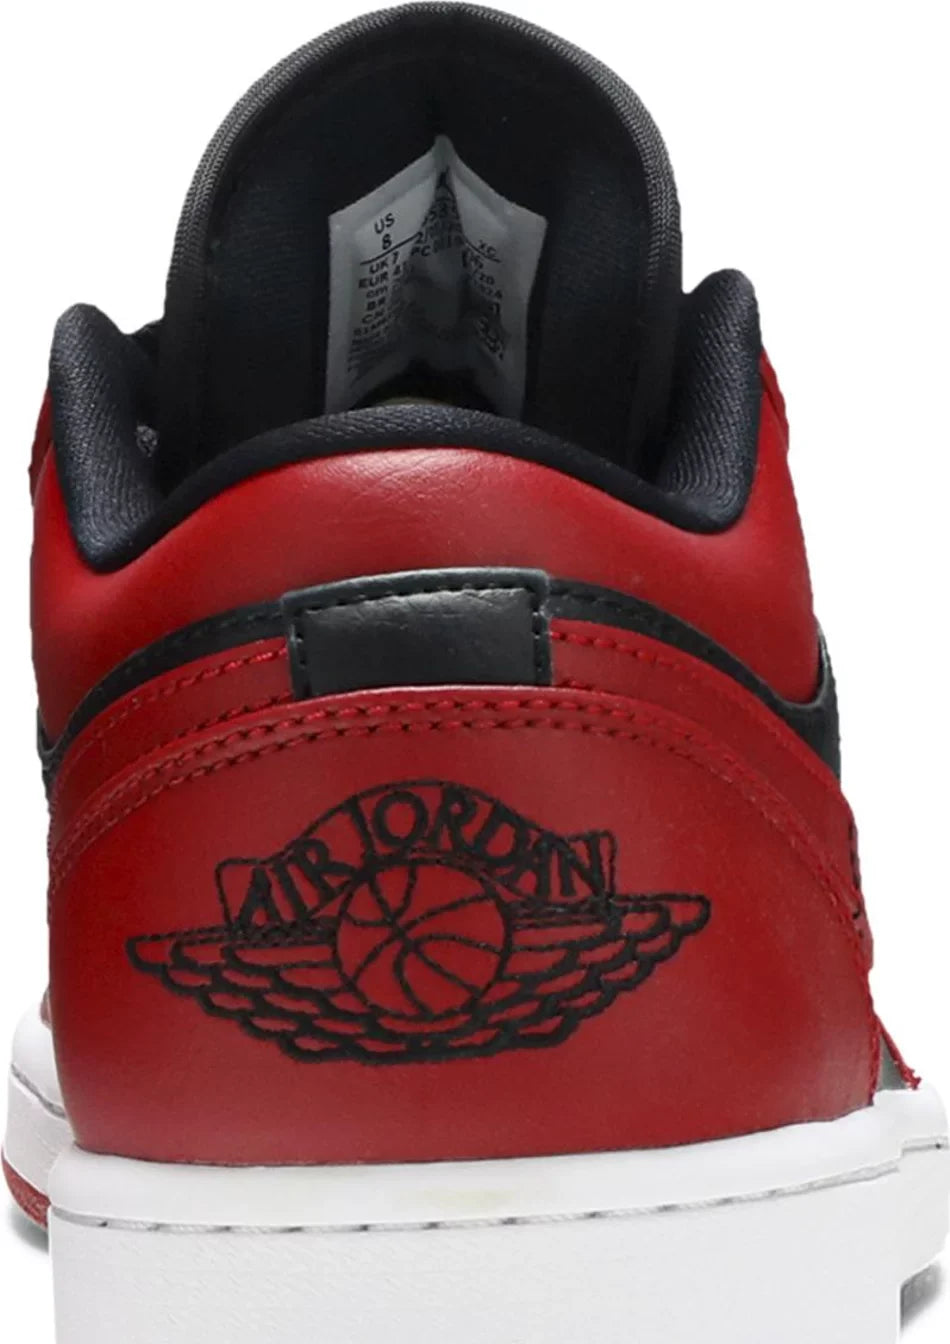 Air Jordan 1 Low Reverse Bred